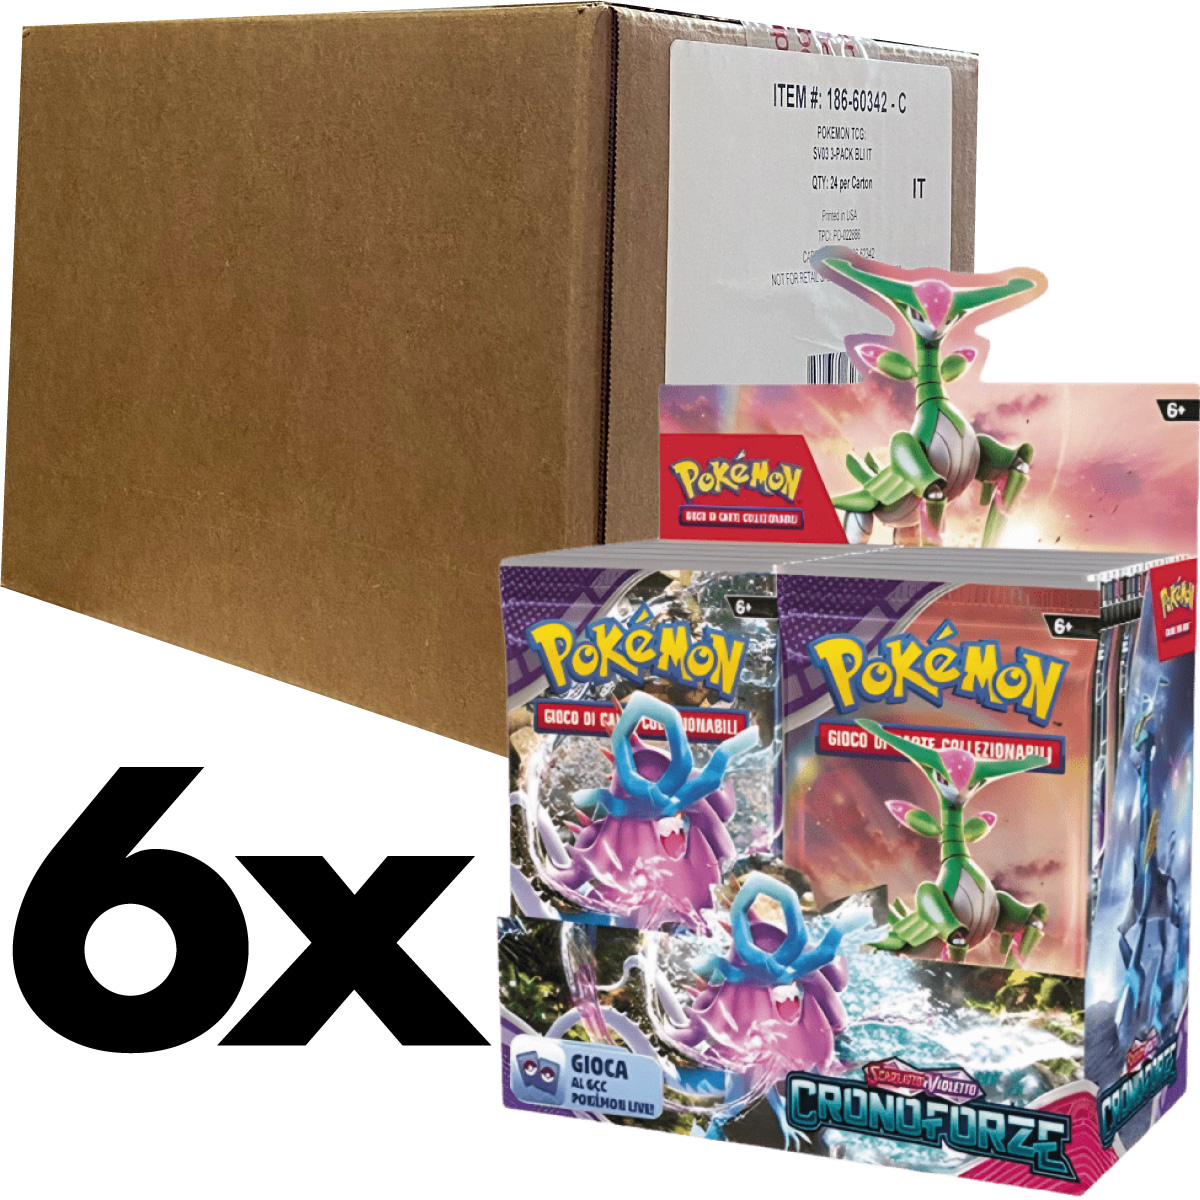 pokemon gcc - pokemon scarlatto e violetto cronoforze - case sigillato 6x box da 36 bustine (ita) - pk62461